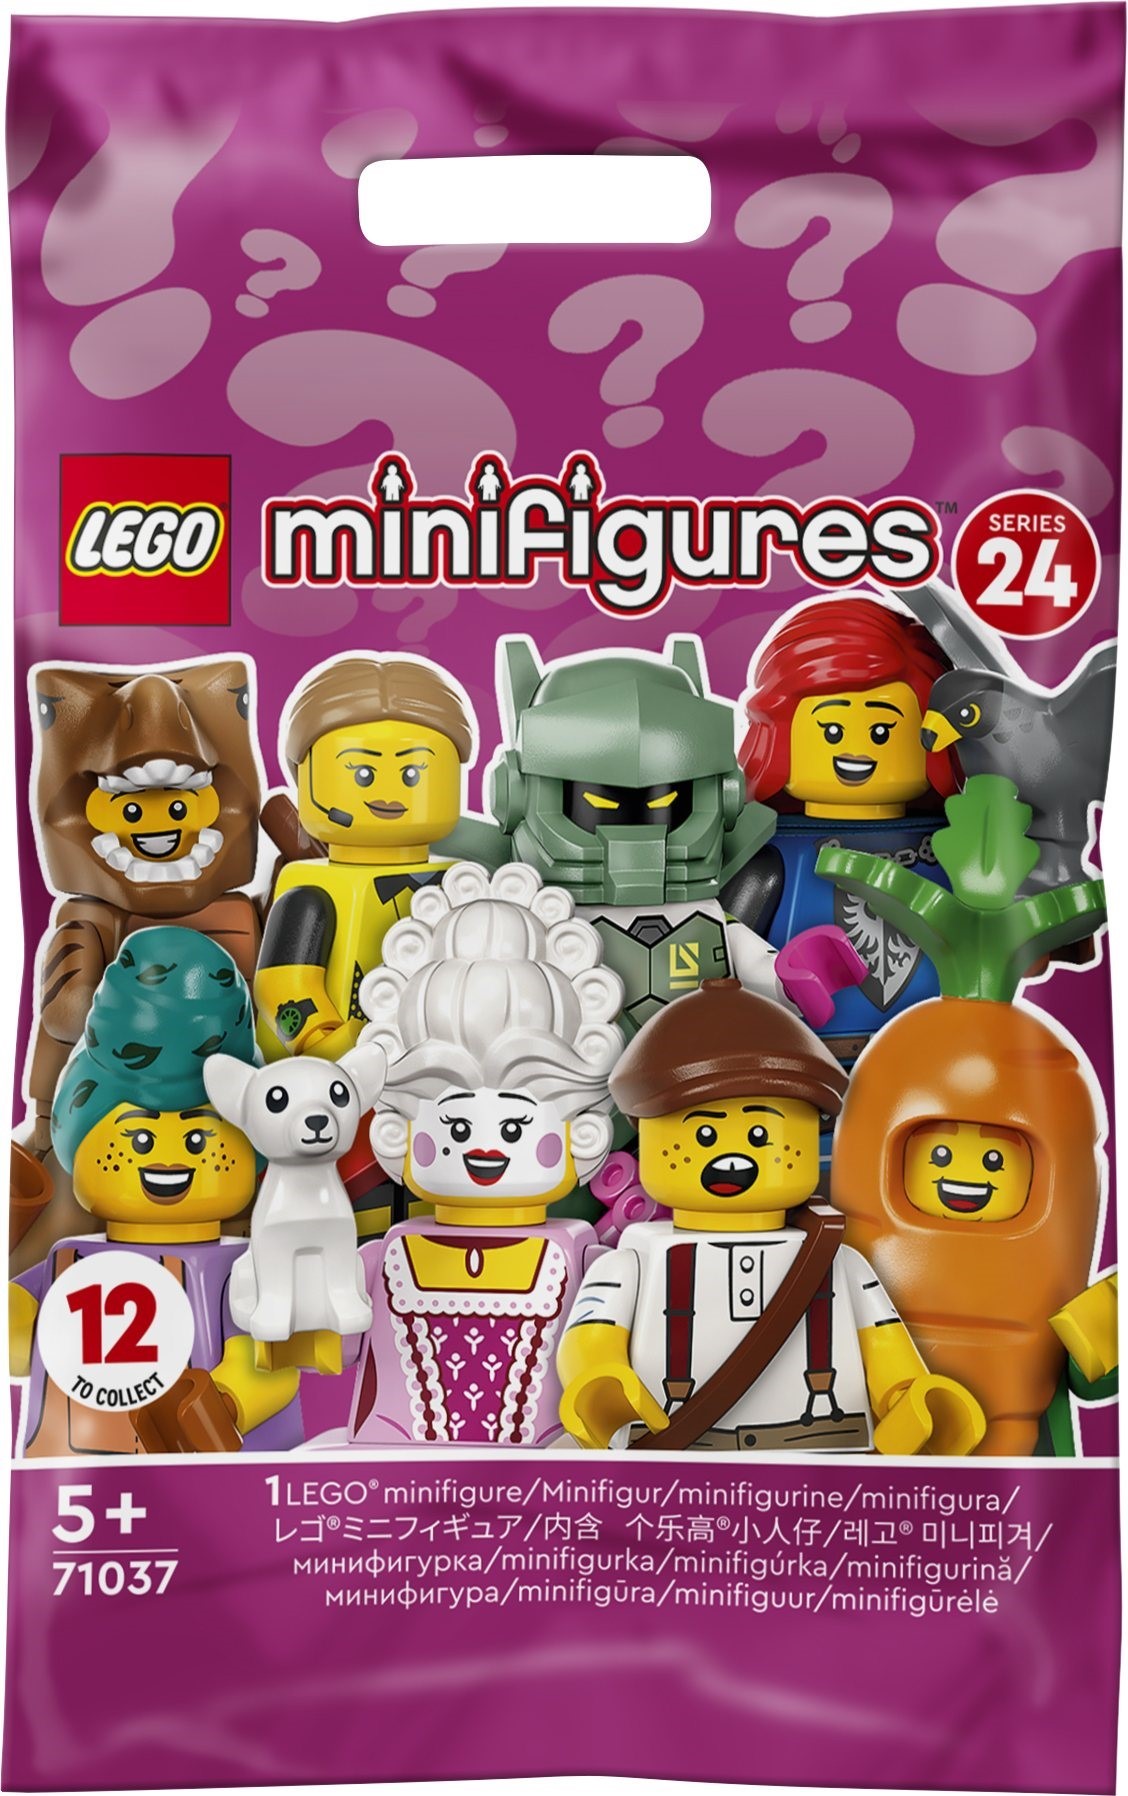 Dark Lord Spike Brawl Stars LEGO Mini Figures Kits